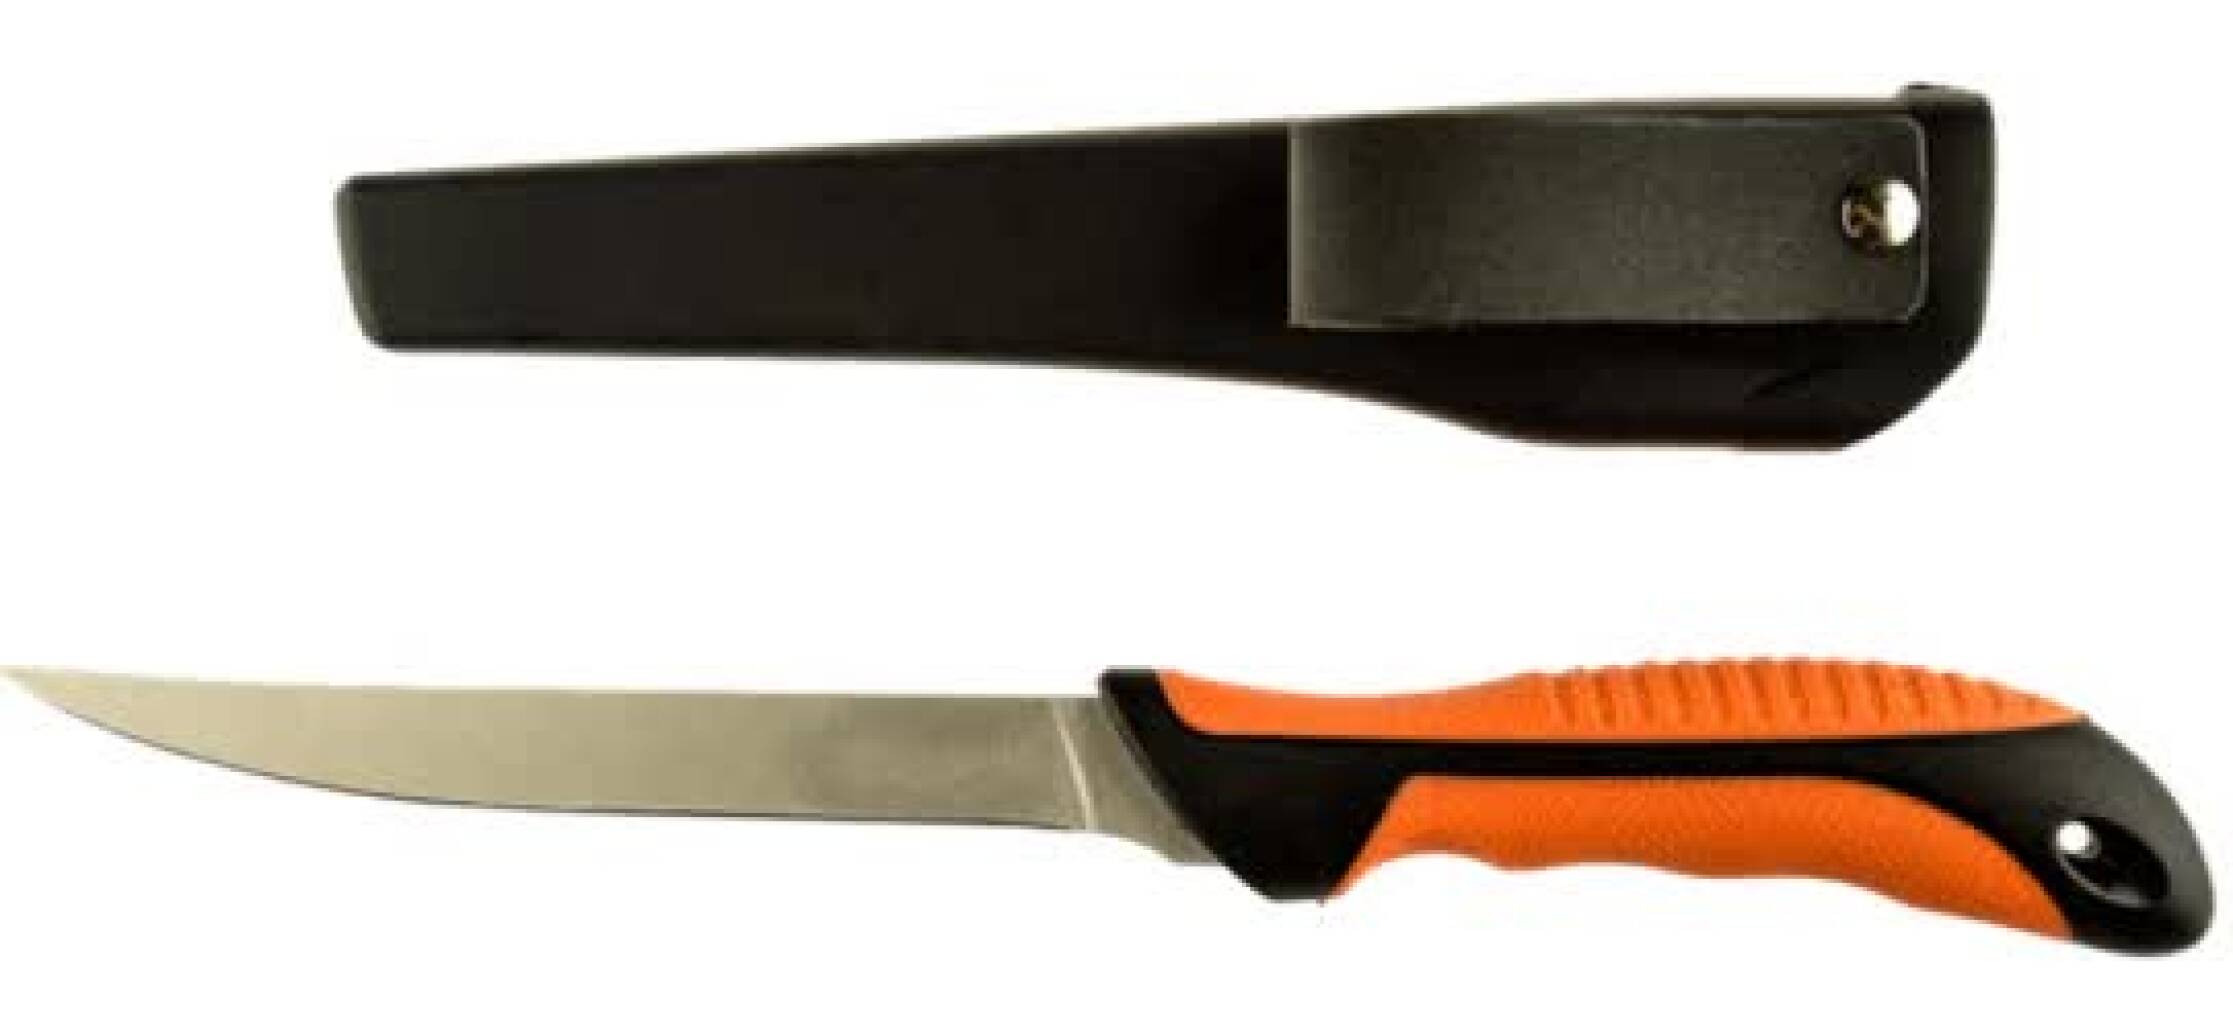 IFISH Filékniv 6'' är en orange filékniv i rostfritt stål och bra grepp. Prisvärd filékniv som syns bra!